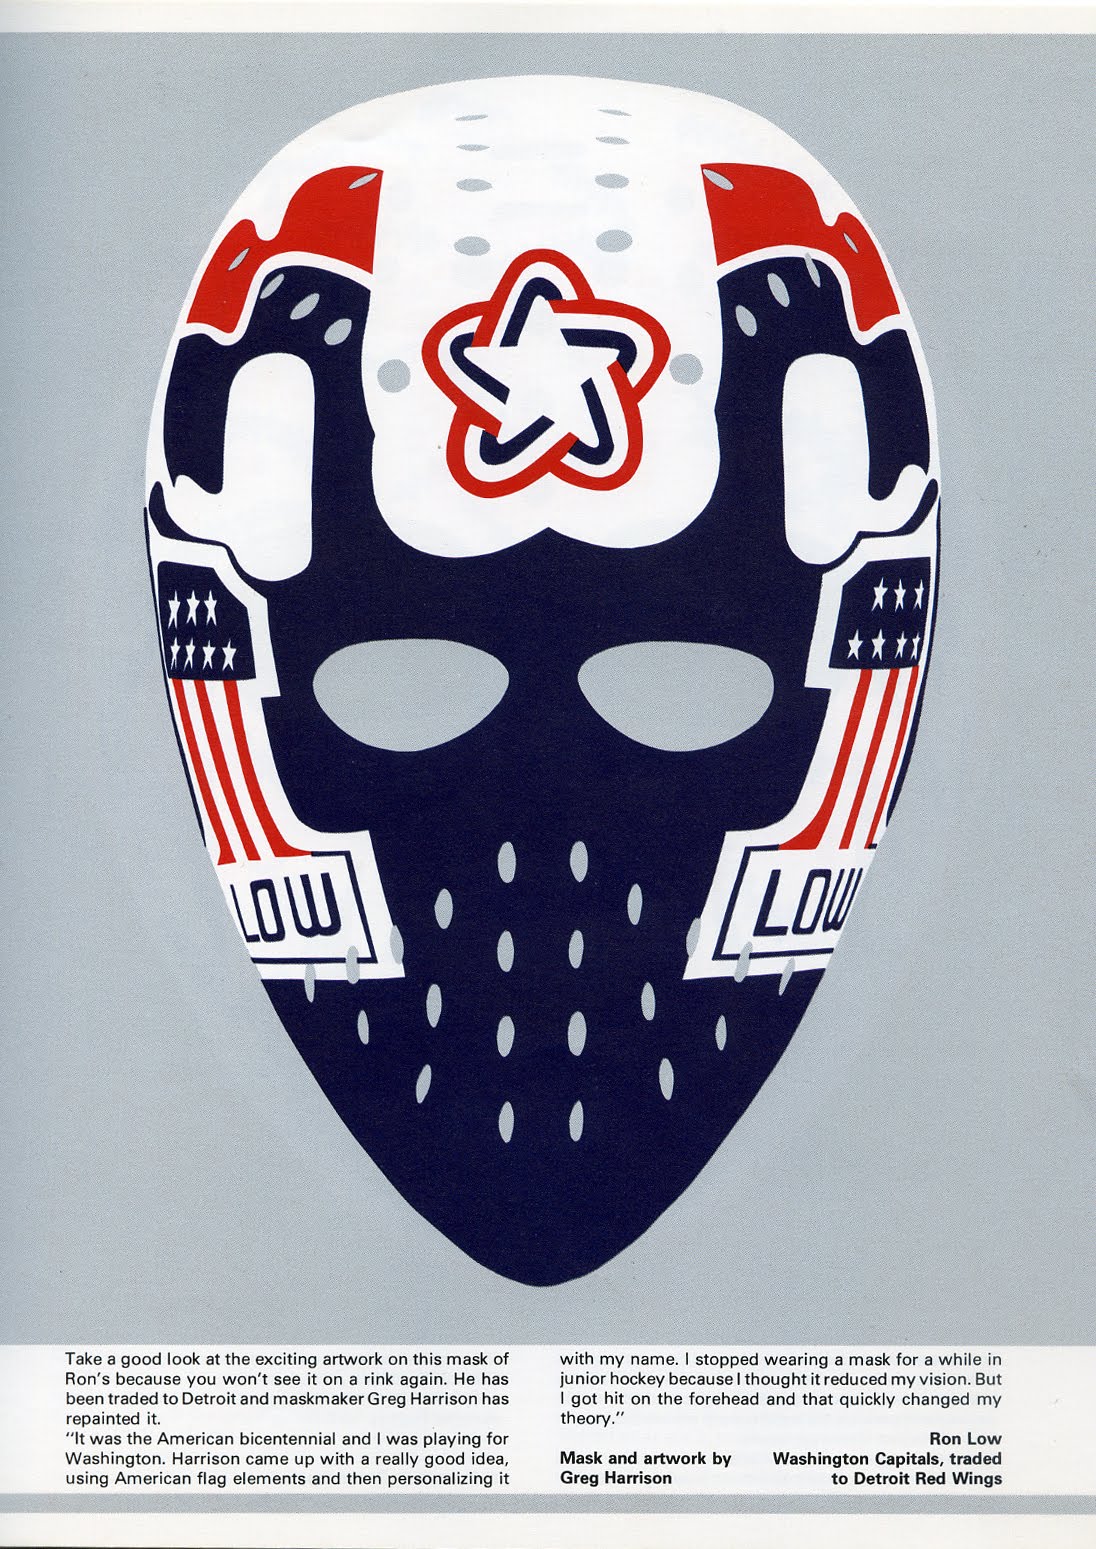 St. Louis Vintage Hockey Goalie Mask - NeatoShop